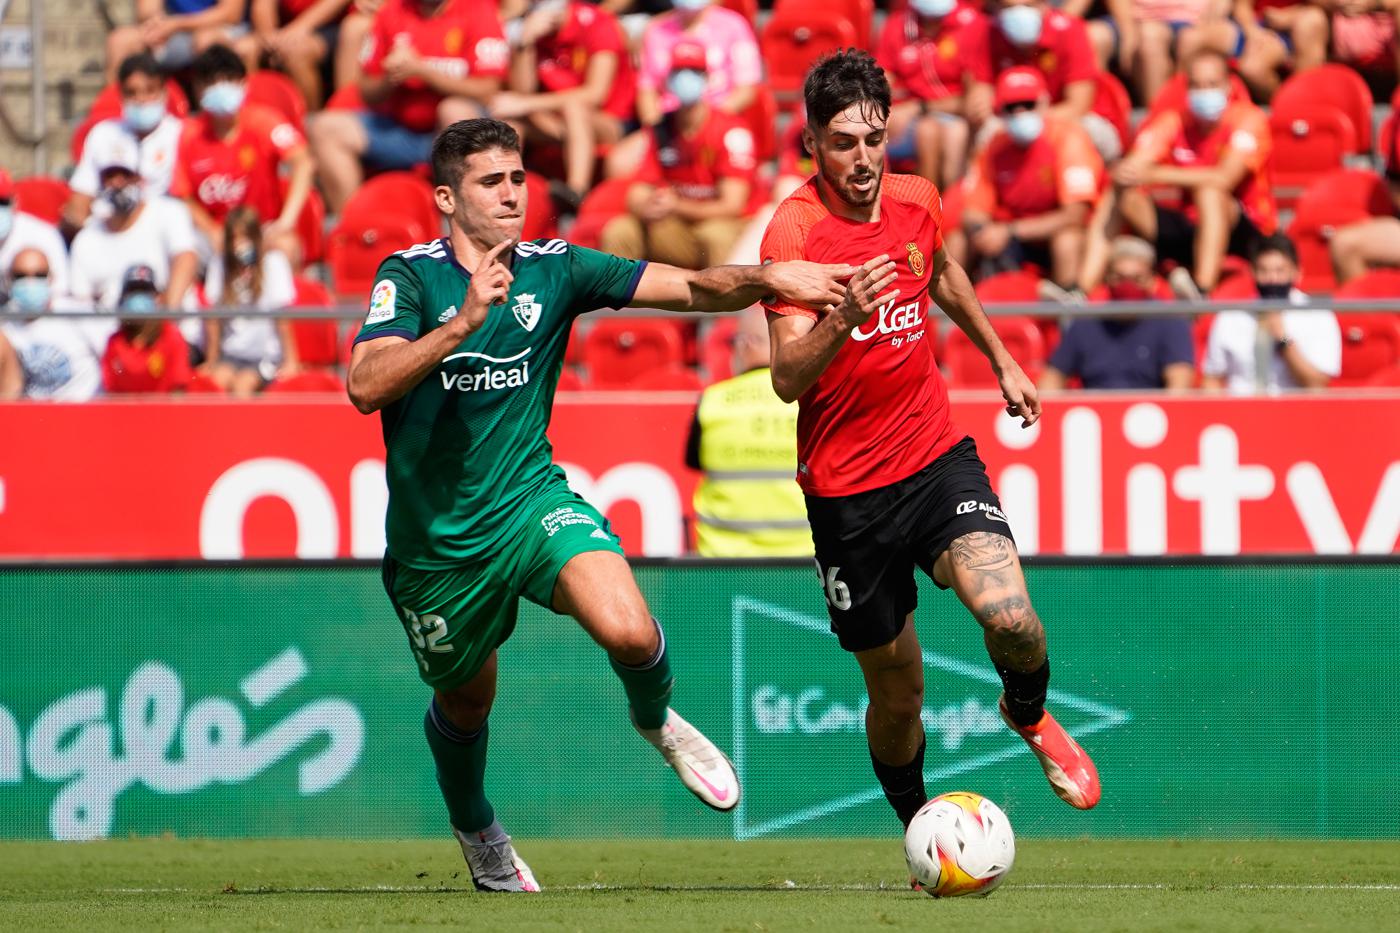 Mallorca - Osasuna - 0:0. Spanische Meisterschaft, 27. Runde. Spielbericht, Statistiken